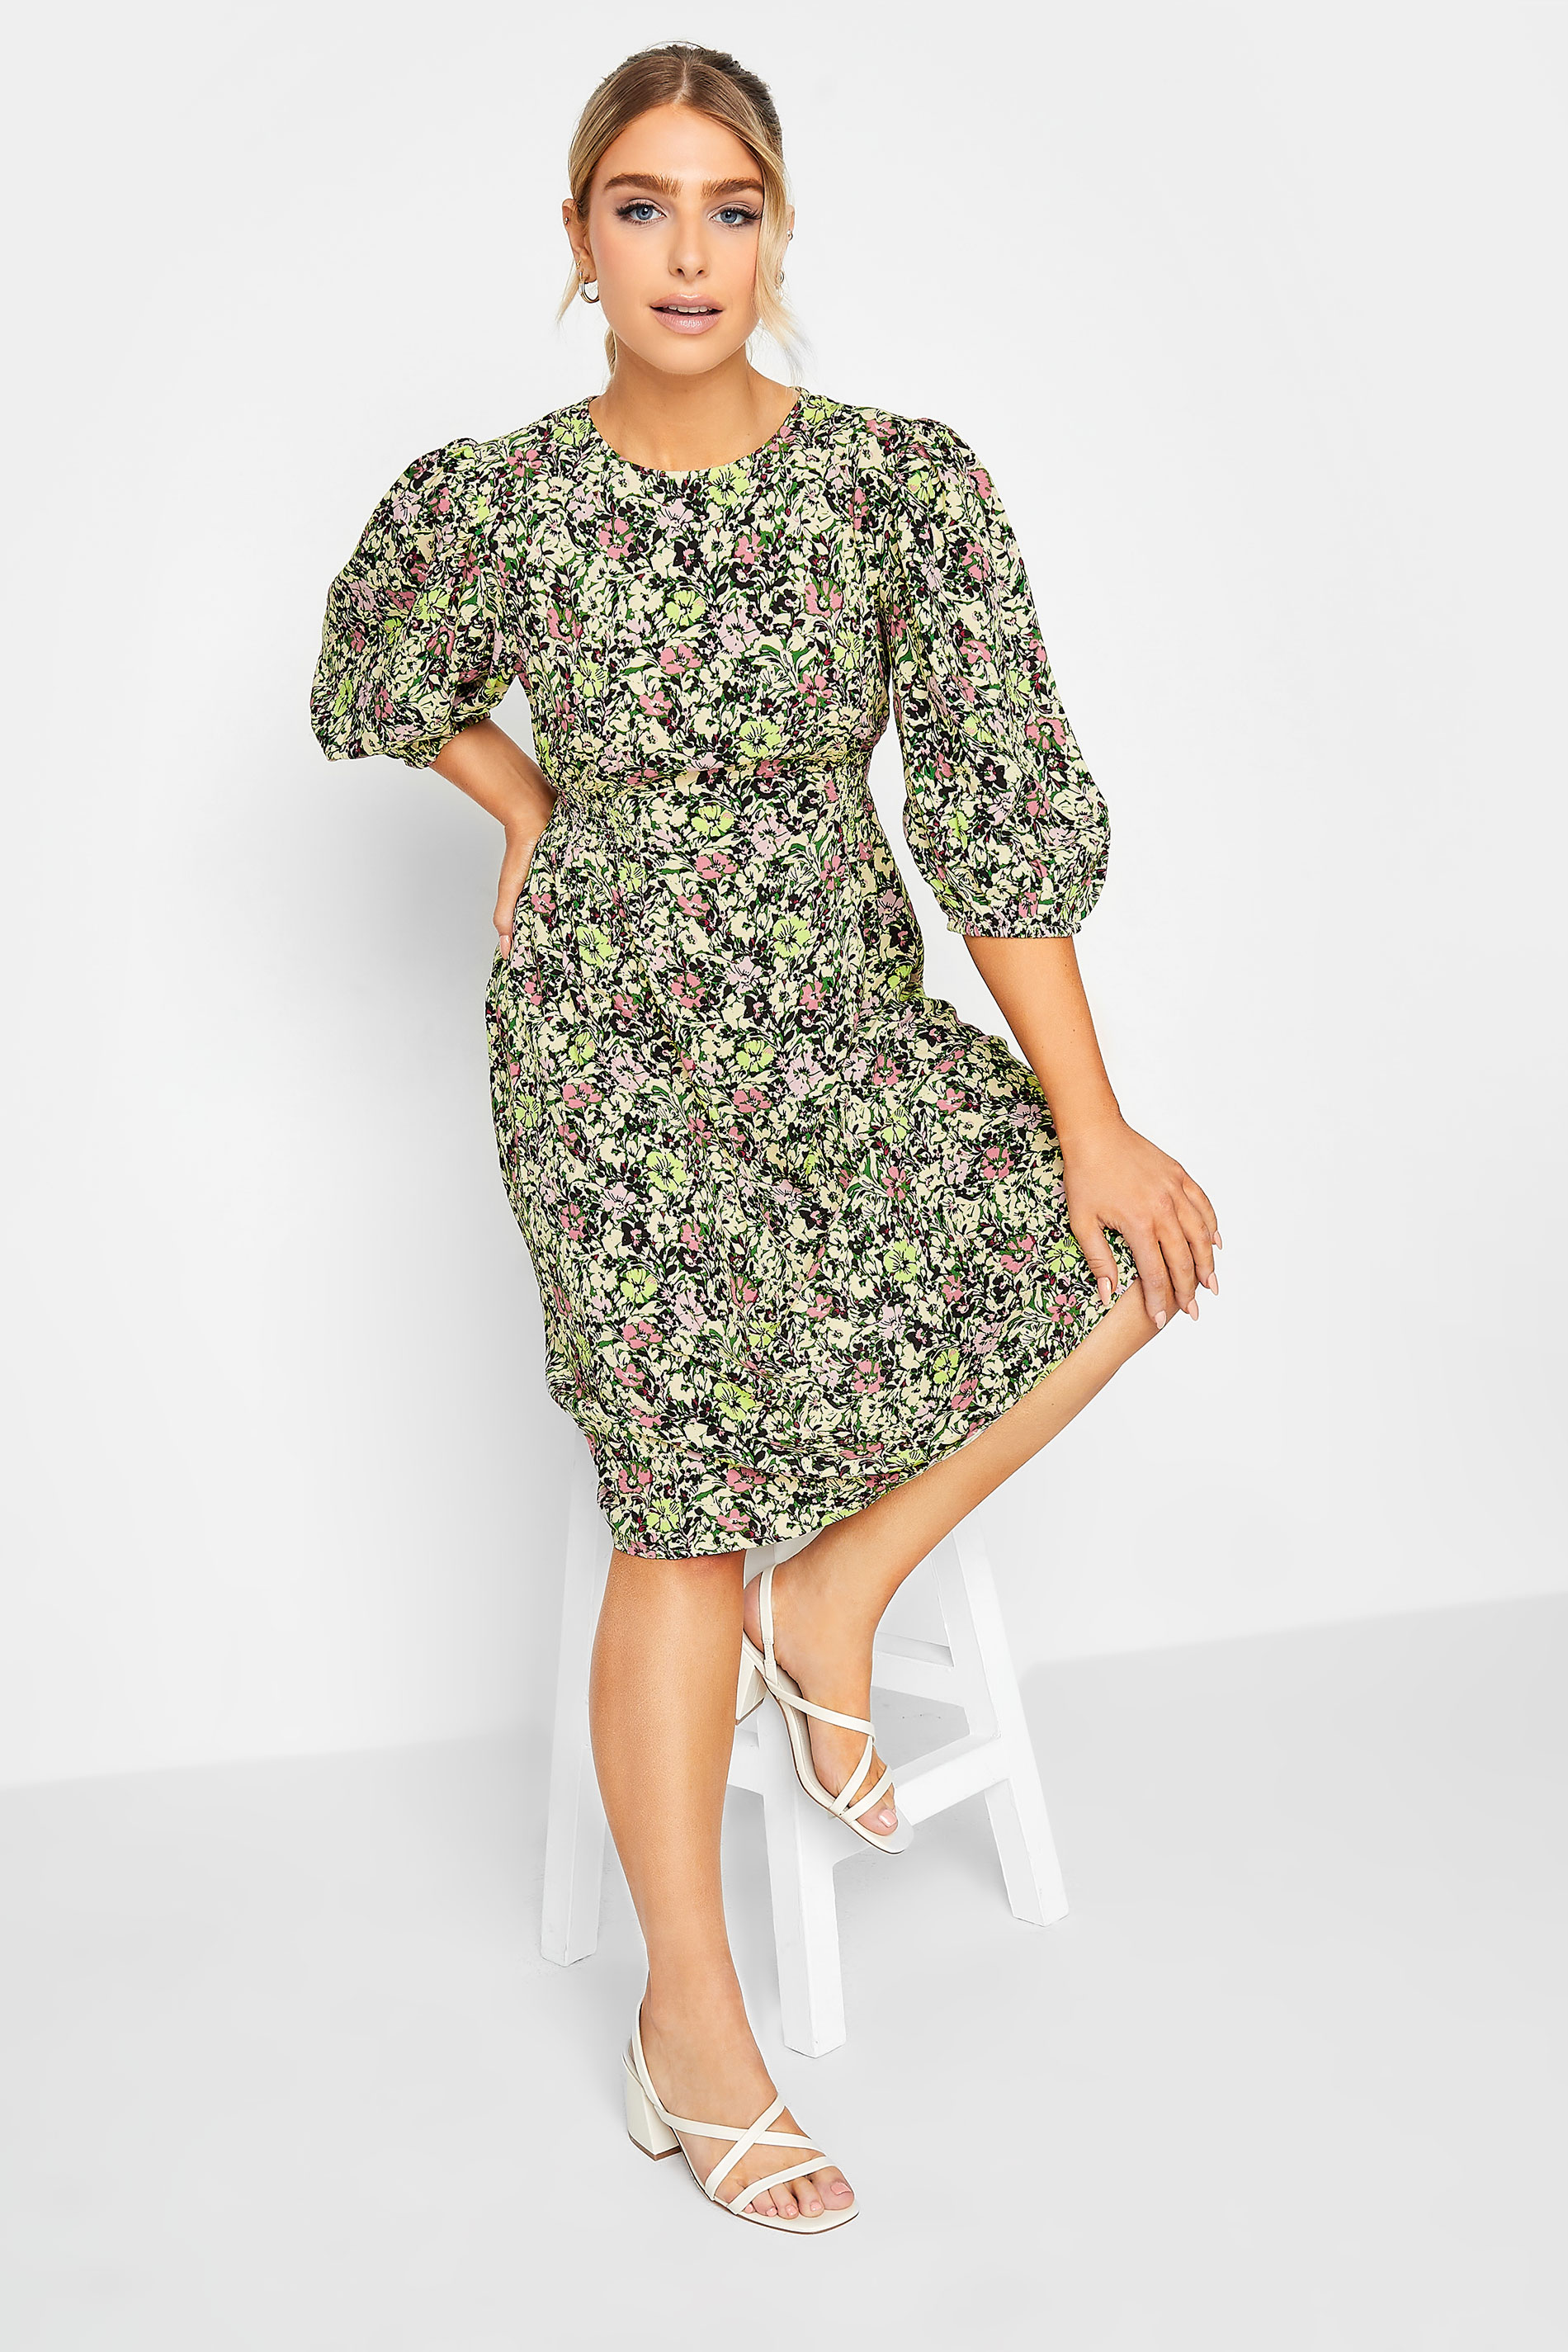 M&Co Green Floral Print Midi Dress | M&Co  2